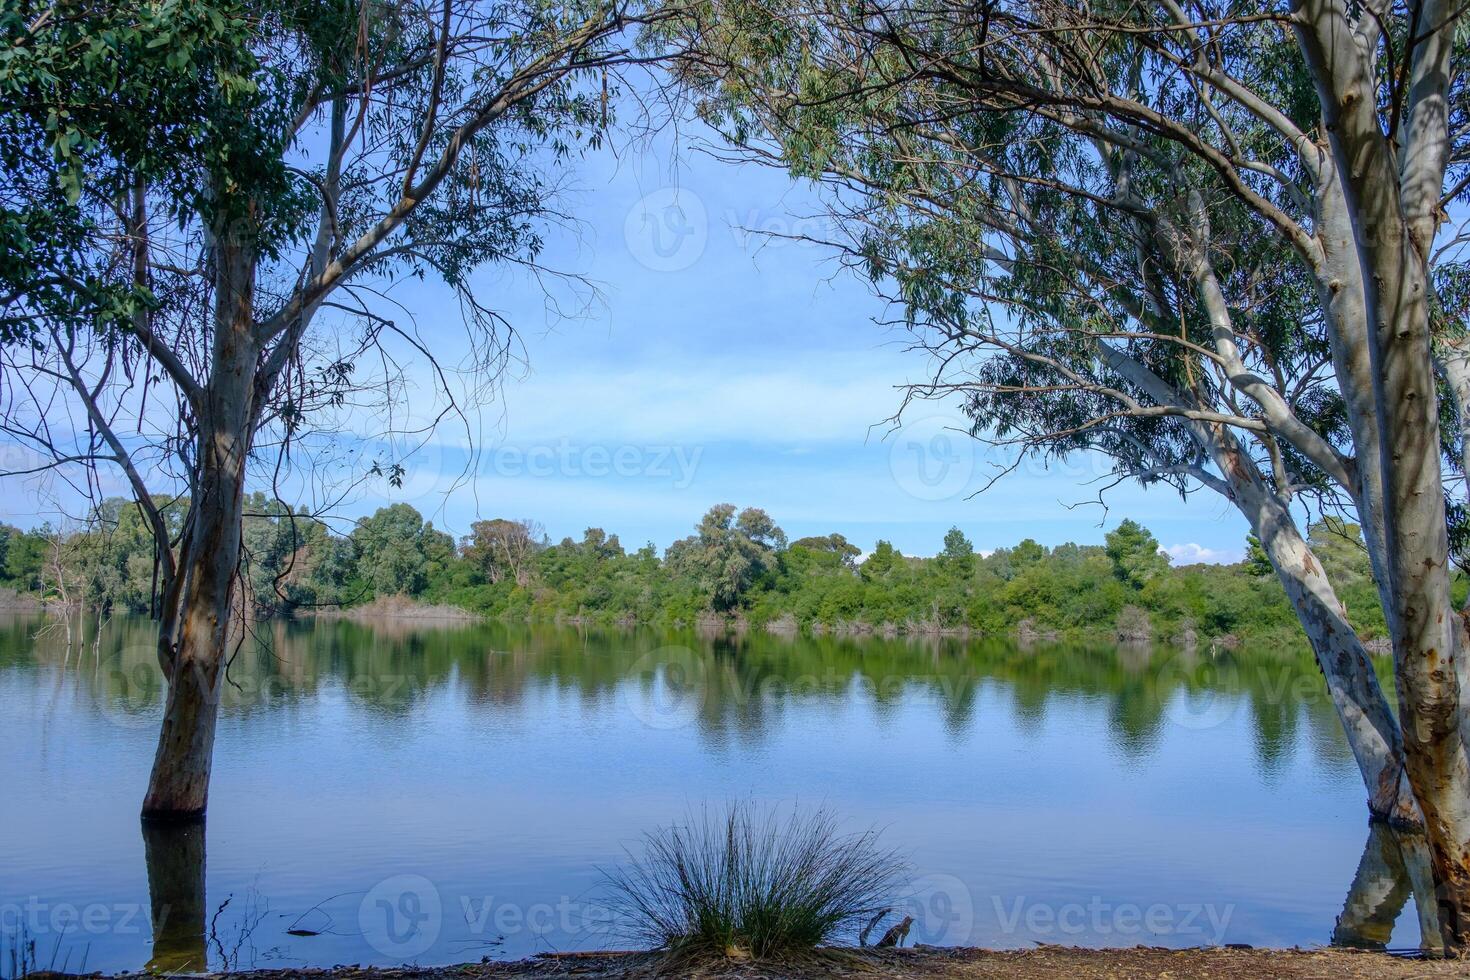 hermoso lago y árboles circundantes en el parque nacional athalassa, chipre. foto